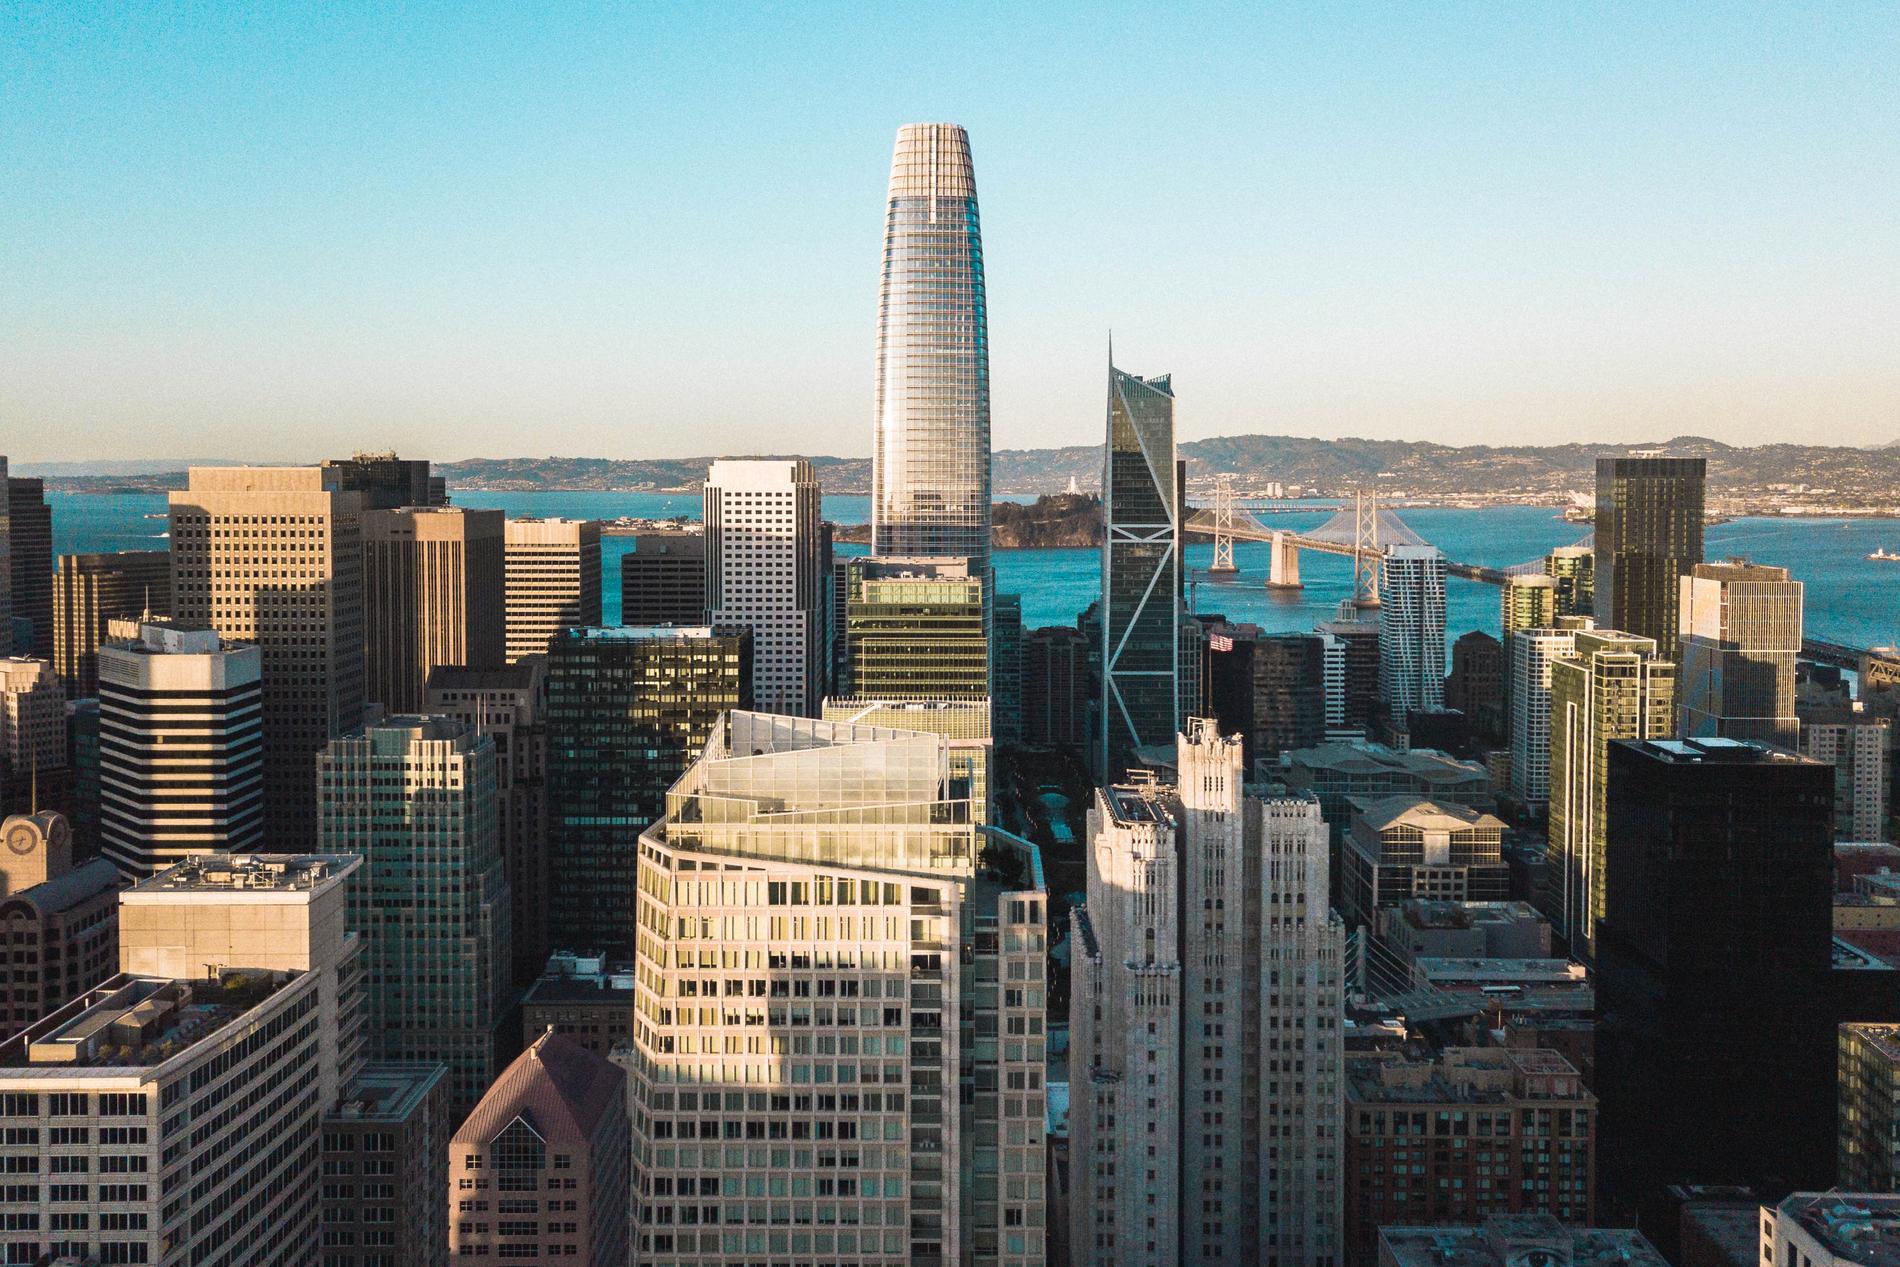 Hellman & Friedman har sitt huvudkontor i Salesforce Tower i San Francisco, den högsta skyskrapan på bilden.